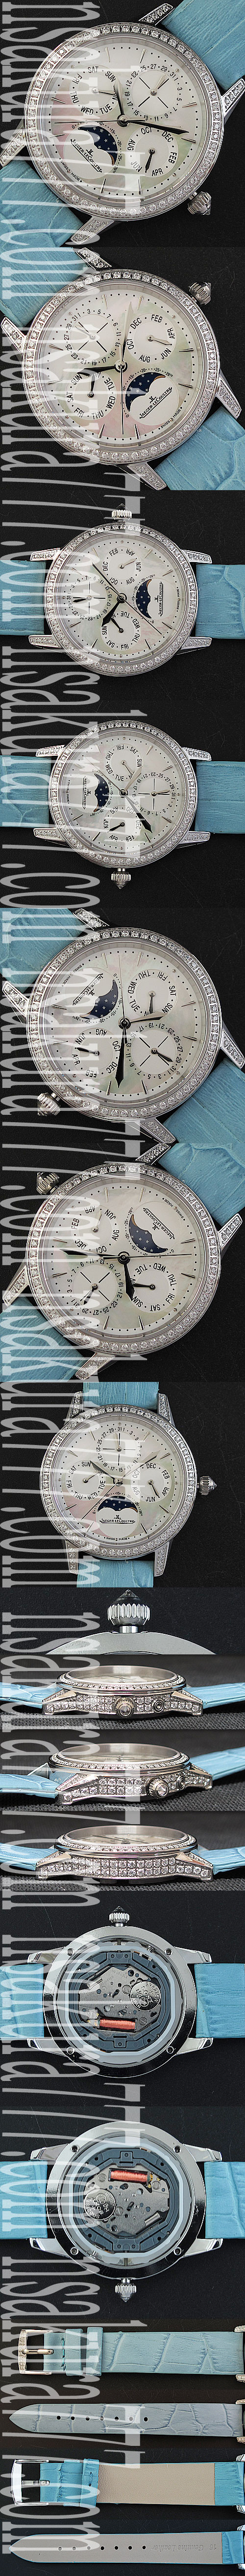 新着腕時計ジャガールクルト マスターウルトラスリムライトブルーベルト(電池式)